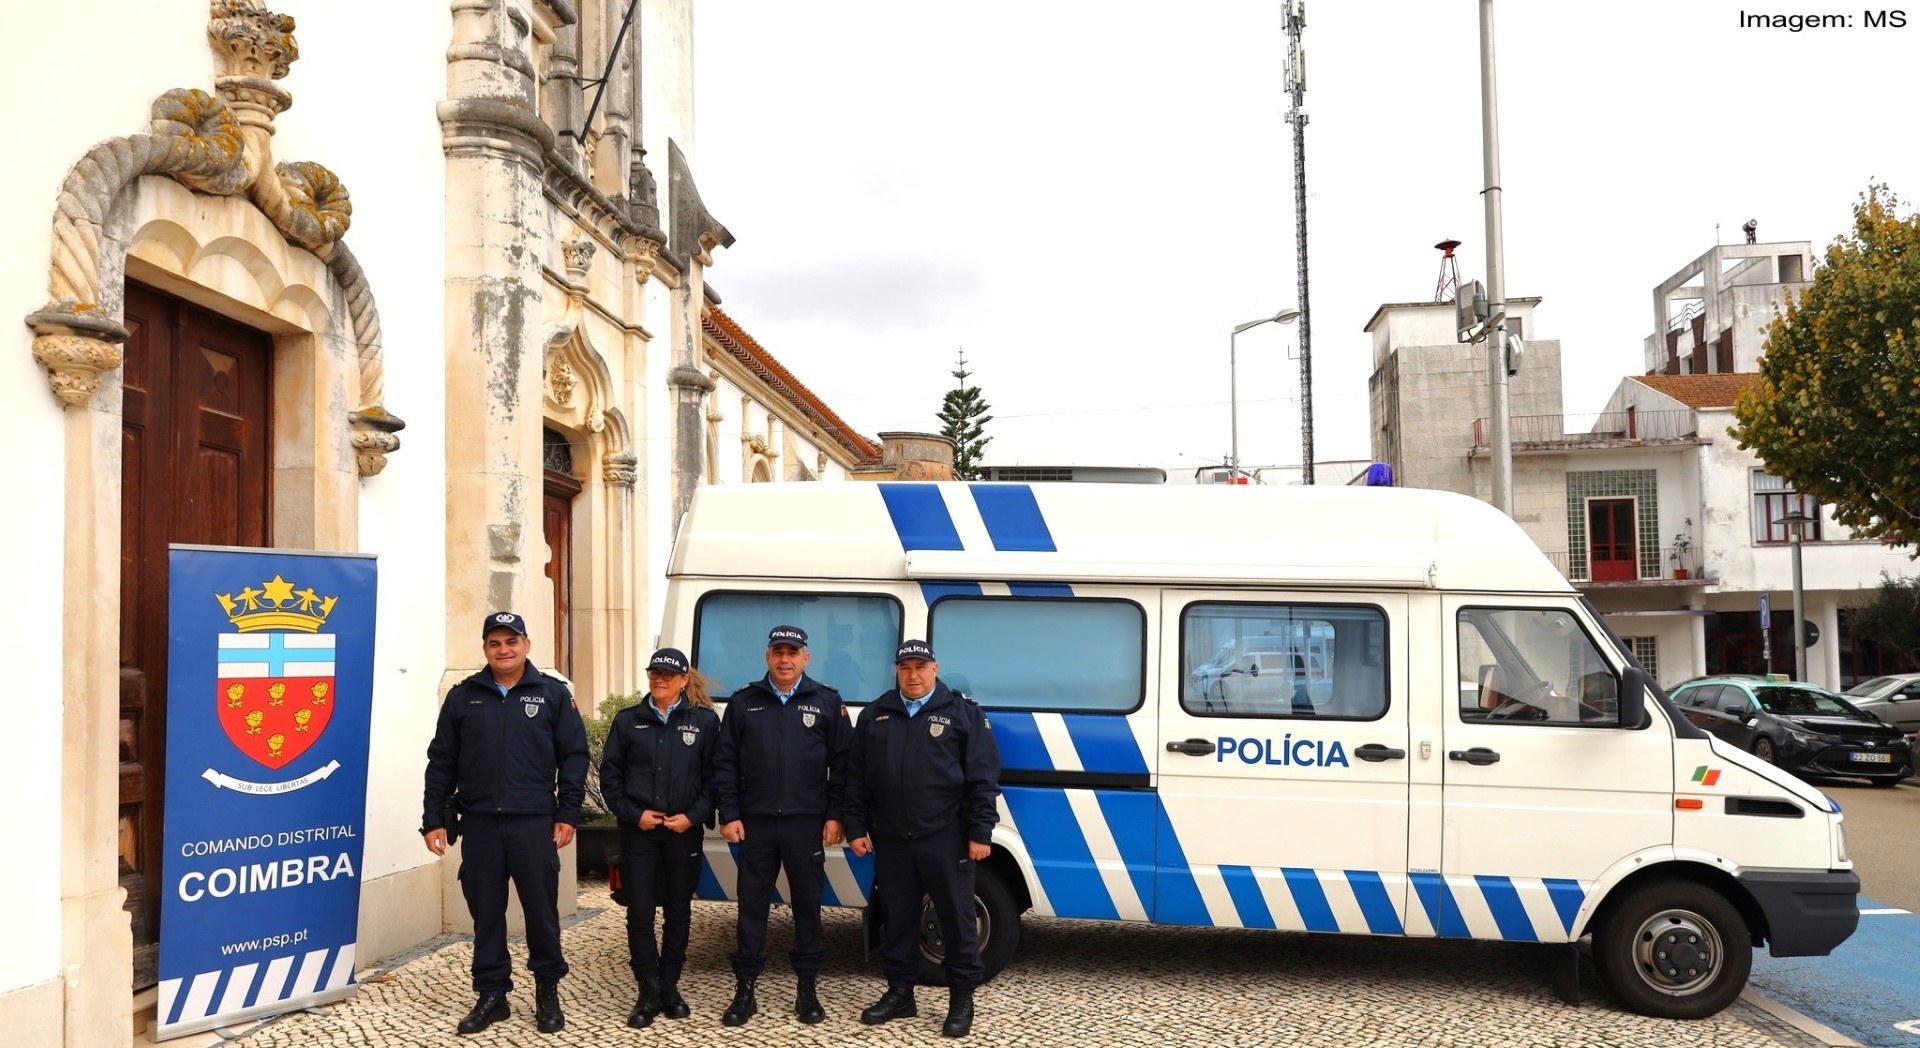 Núcleo De Armas E Explosivos Da PSP De Coimbra Esteve Em Atendimento Móvel Em Soure Para Facilitar A Vida Aos Cidadãos